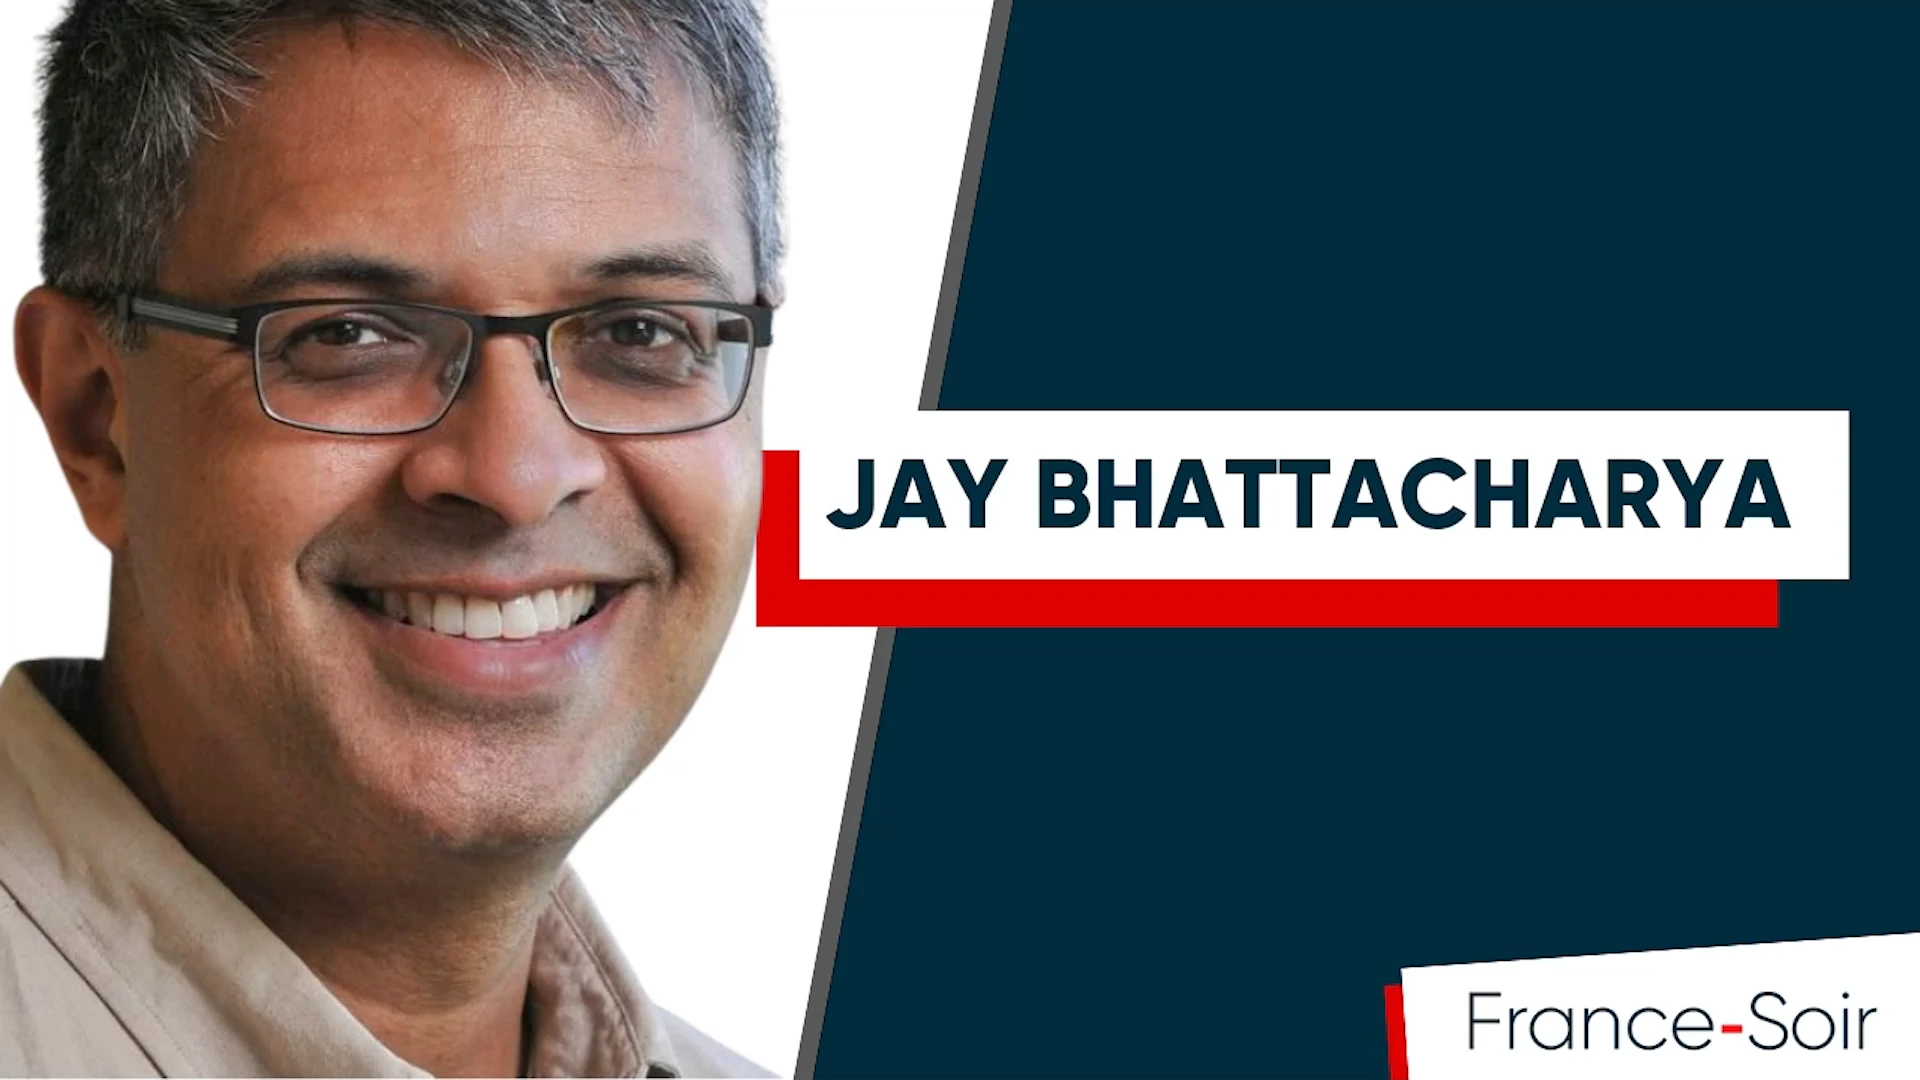 La confiance dans la santé publique est au plus bas niveau que j’aie jamais vu”, Jay Bhattacharya, professeur de médecine et d’économie